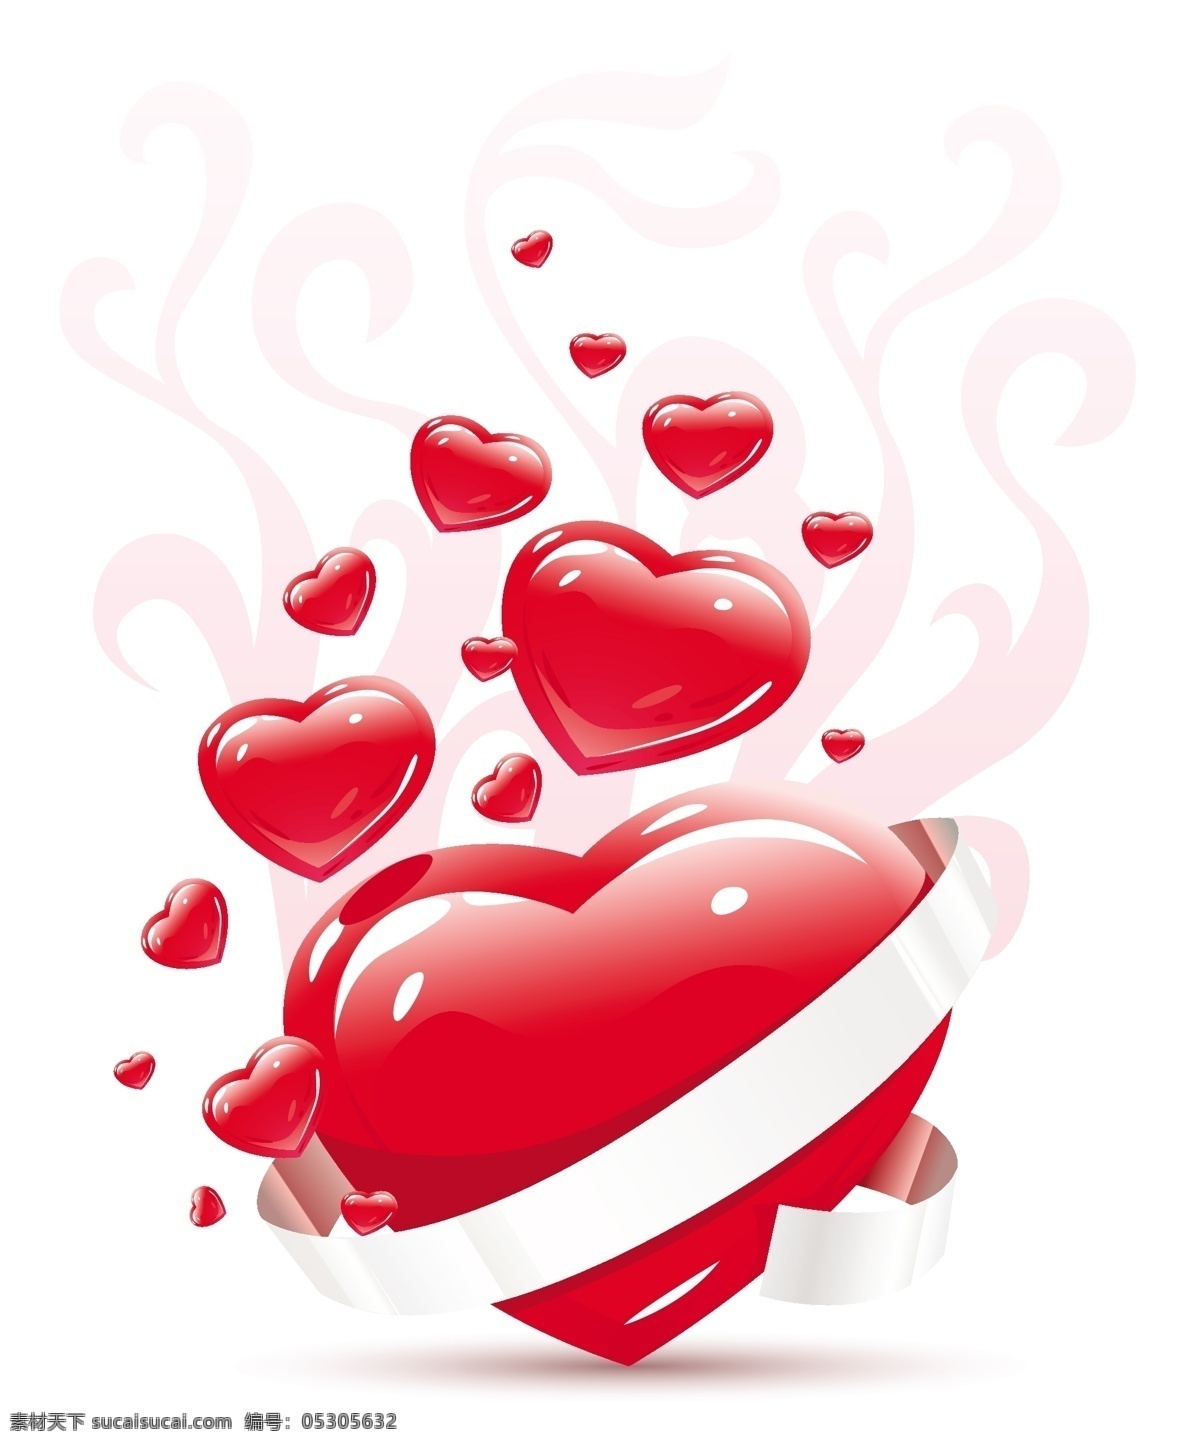 浪漫 爱心 矢量 素材图片 爱心设计 花纹 浪漫心形 丝带 立体红心 矢量图 其他矢量图